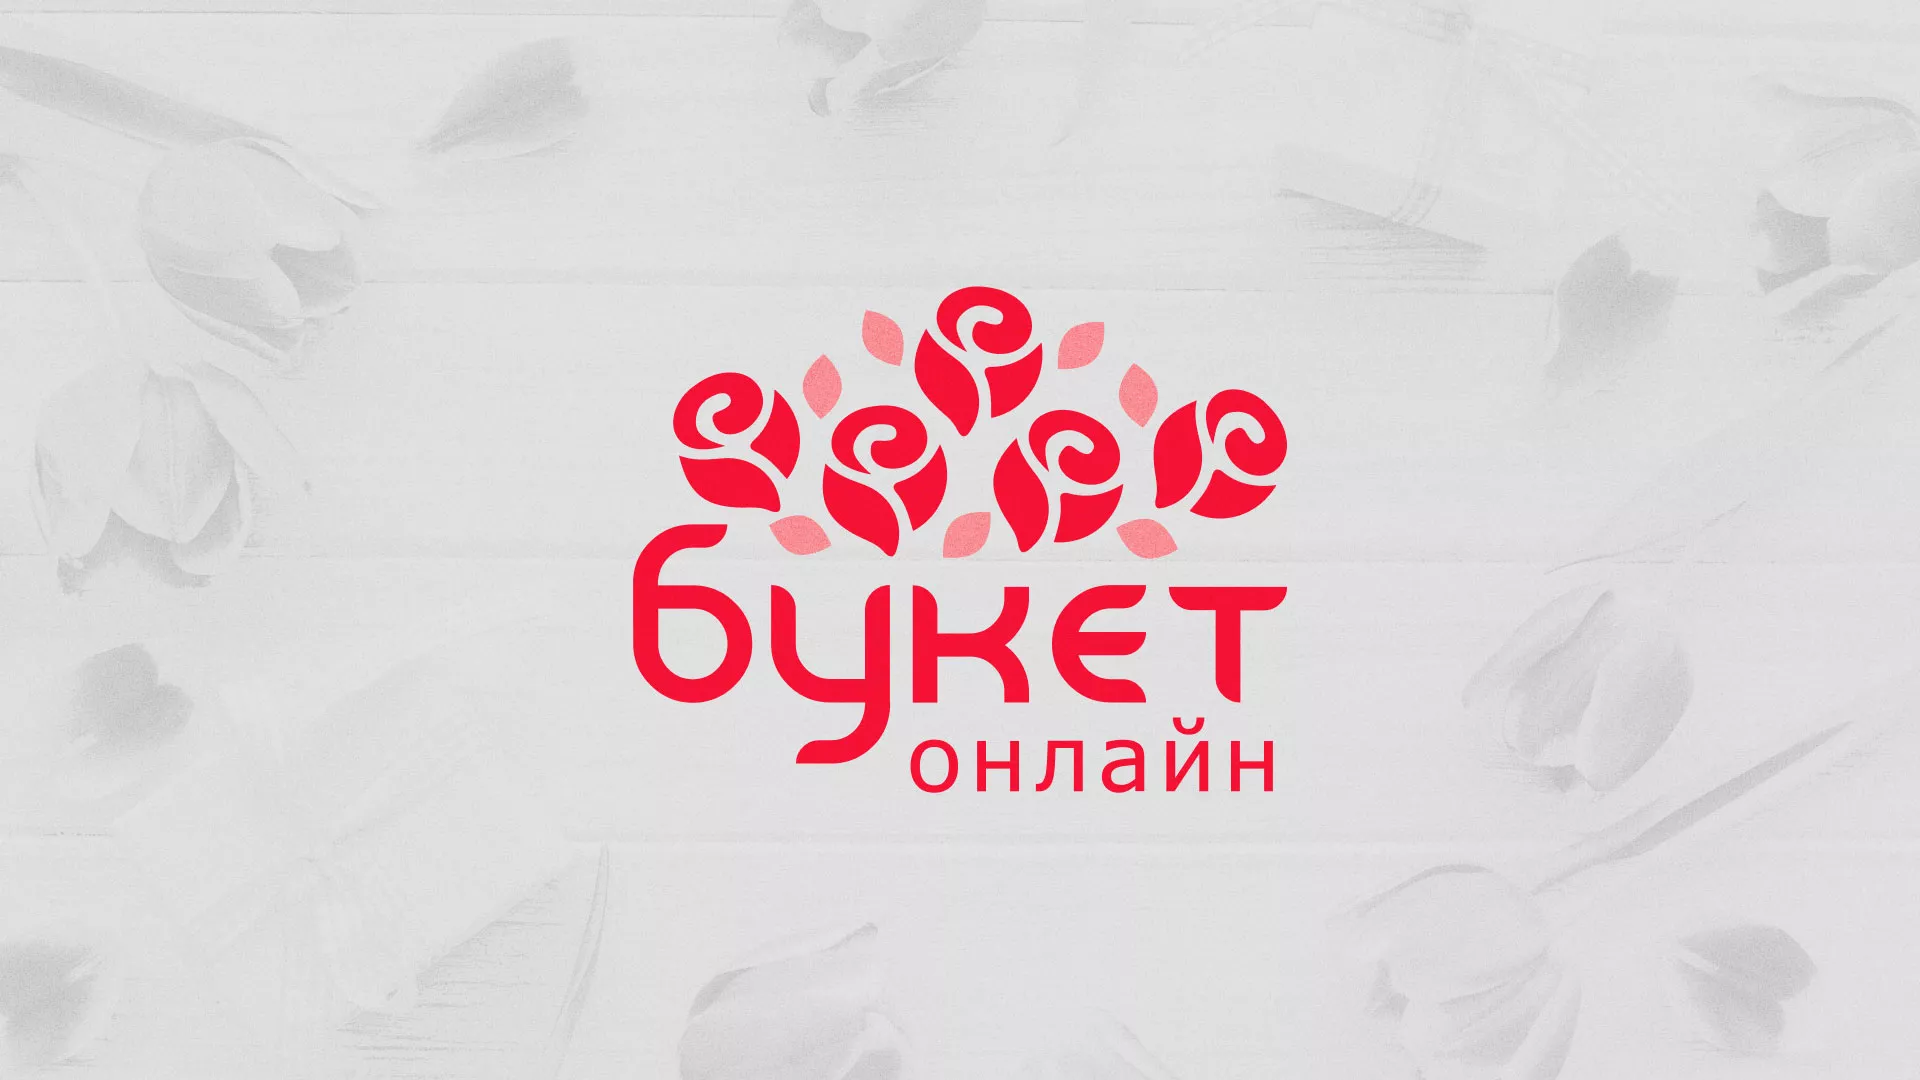 Создание интернет-магазина «Букет-онлайн» по цветам в Зиме